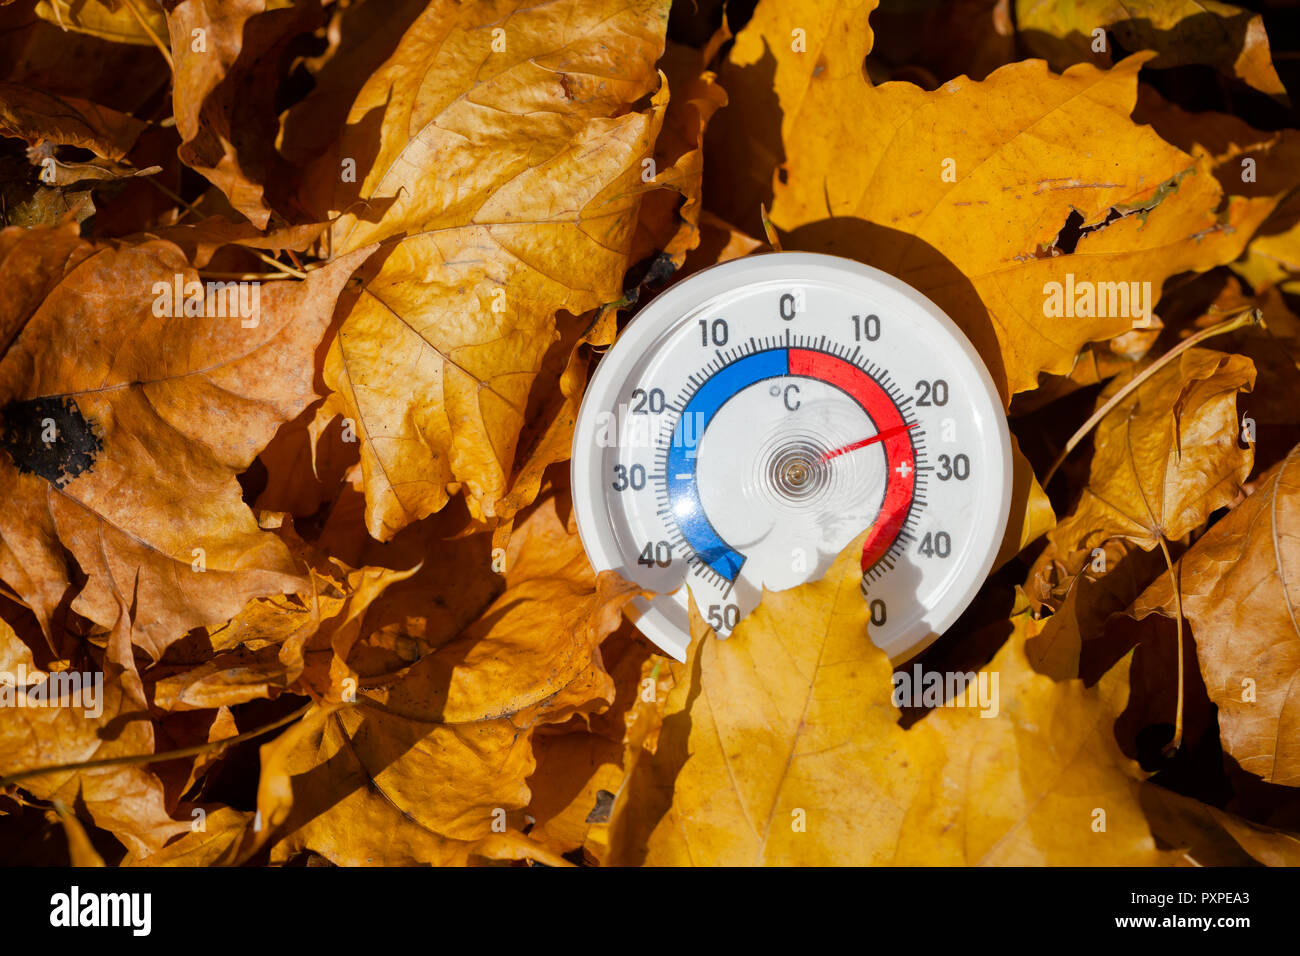 Termometro da esterno con scala Celsius in golden foglie di acero che mostra la temperatura calda - hot estate indiana o il riscaldamento globale concetto Foto Stock